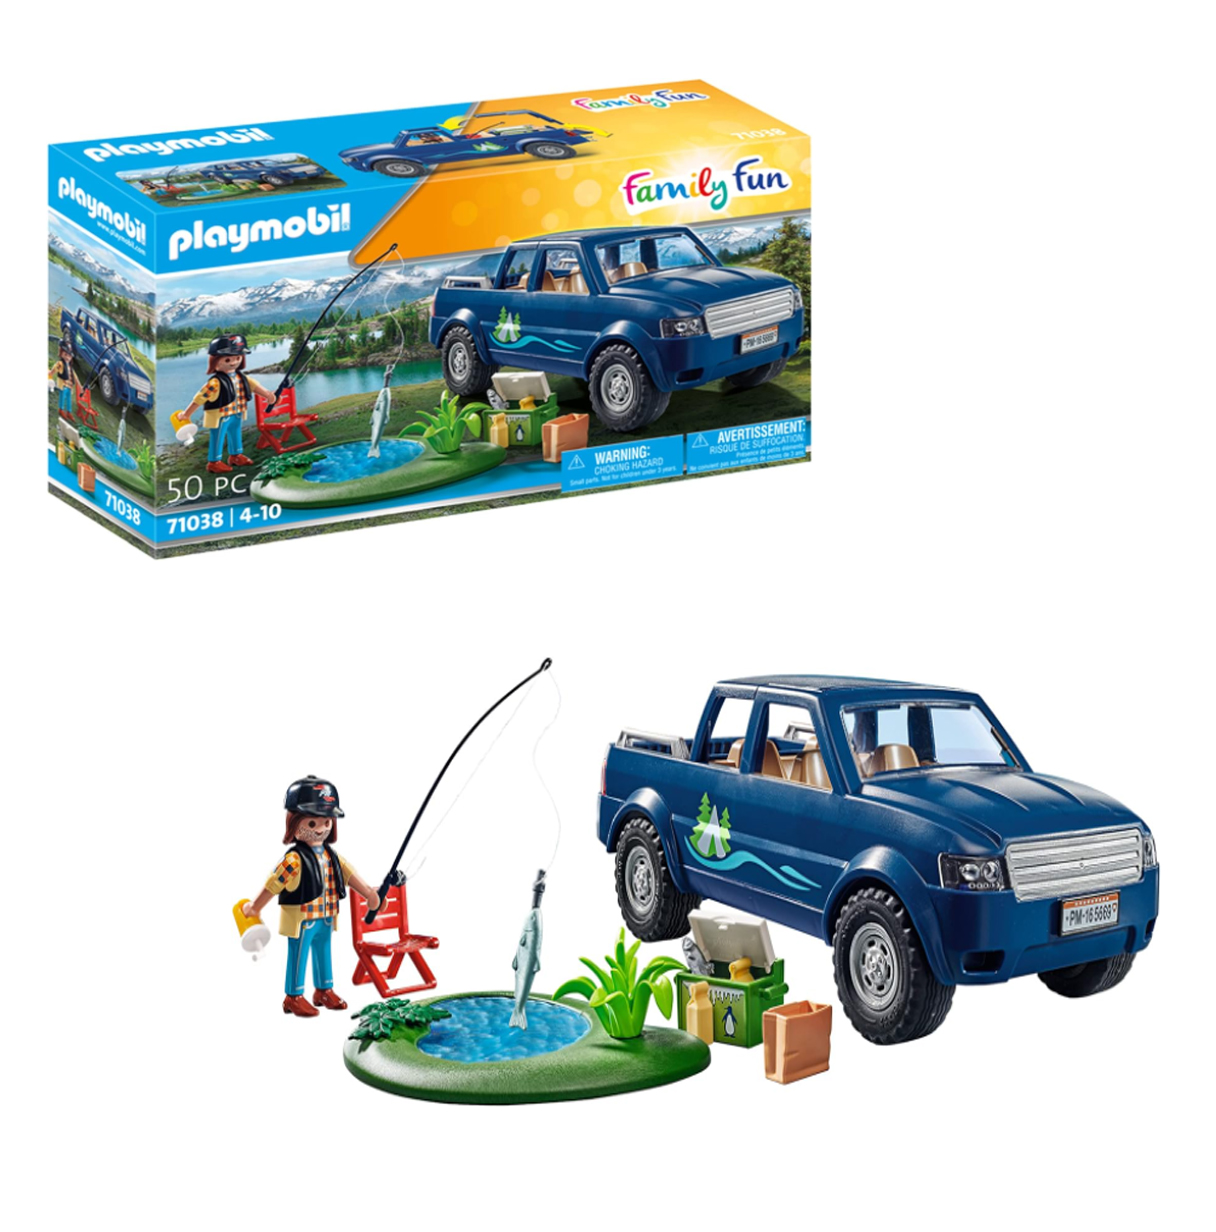 playmobil outdoor set ( 71038 )